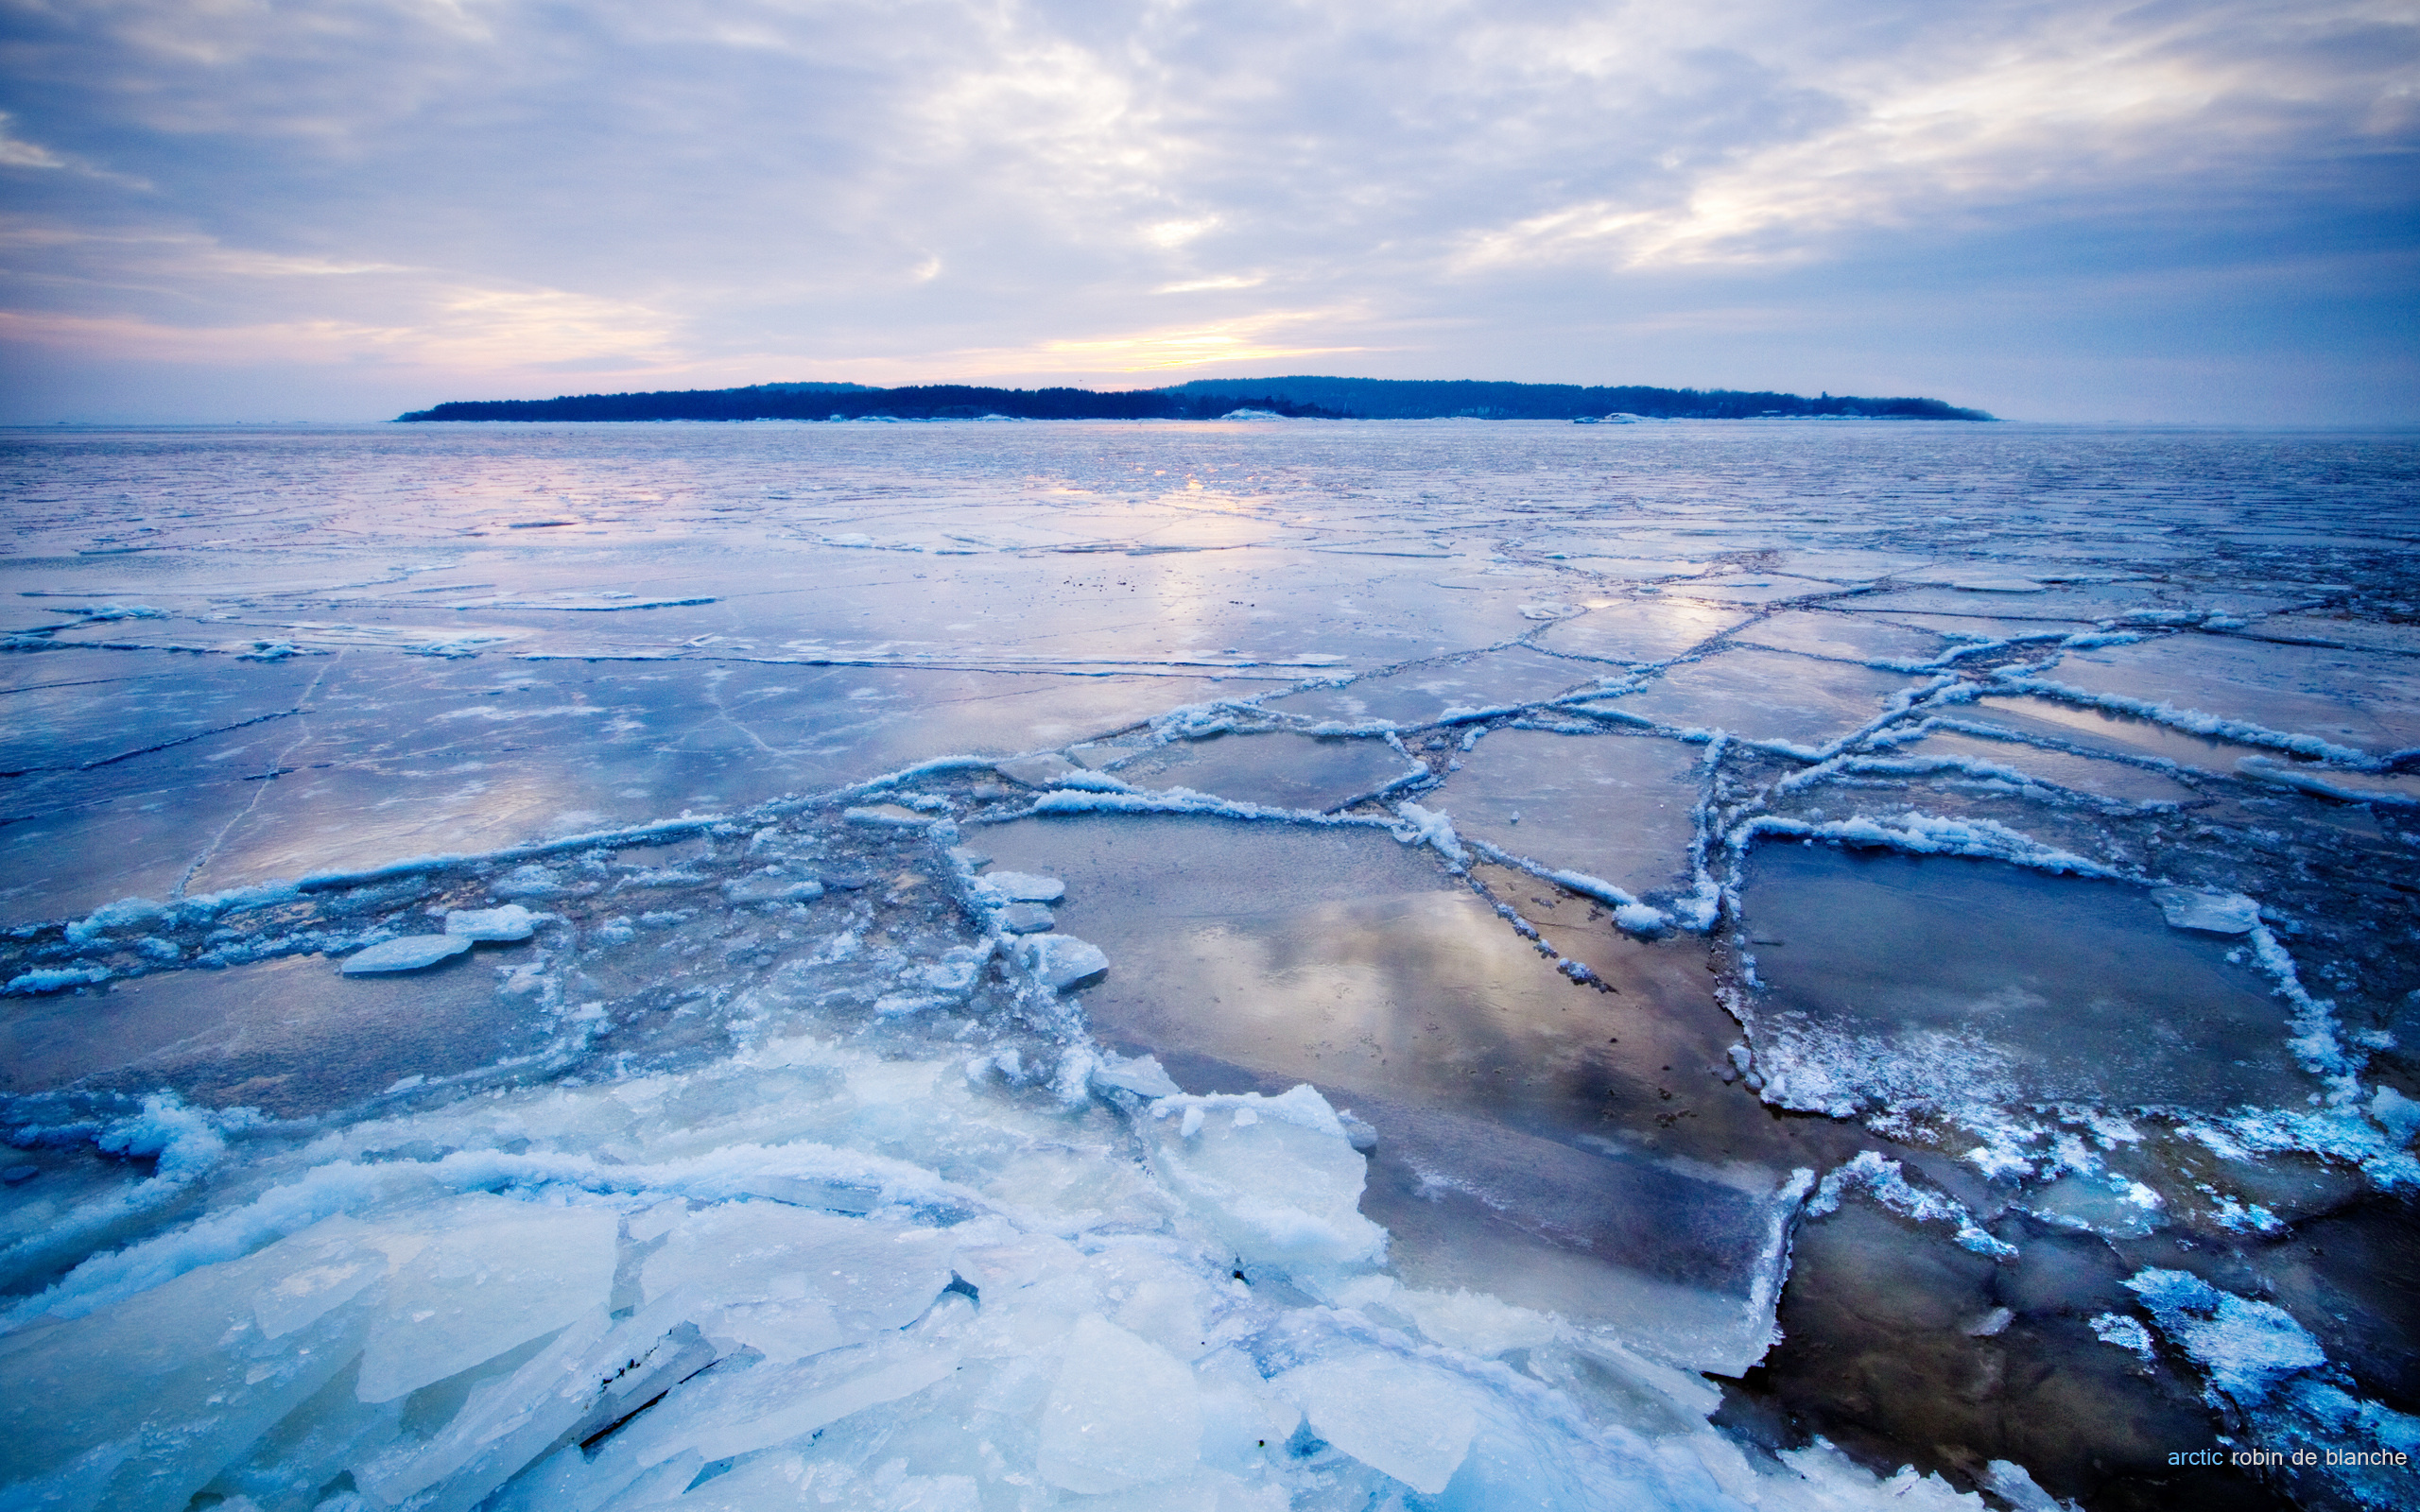 Океан покрытый льдом. Северный Ледовитый океан Восточно-Сибирское море. Арктика Северный Ледовитый океан. Ледяной Покров Северного Ледовитого океана. Льды Арктики северооедовитого океана.